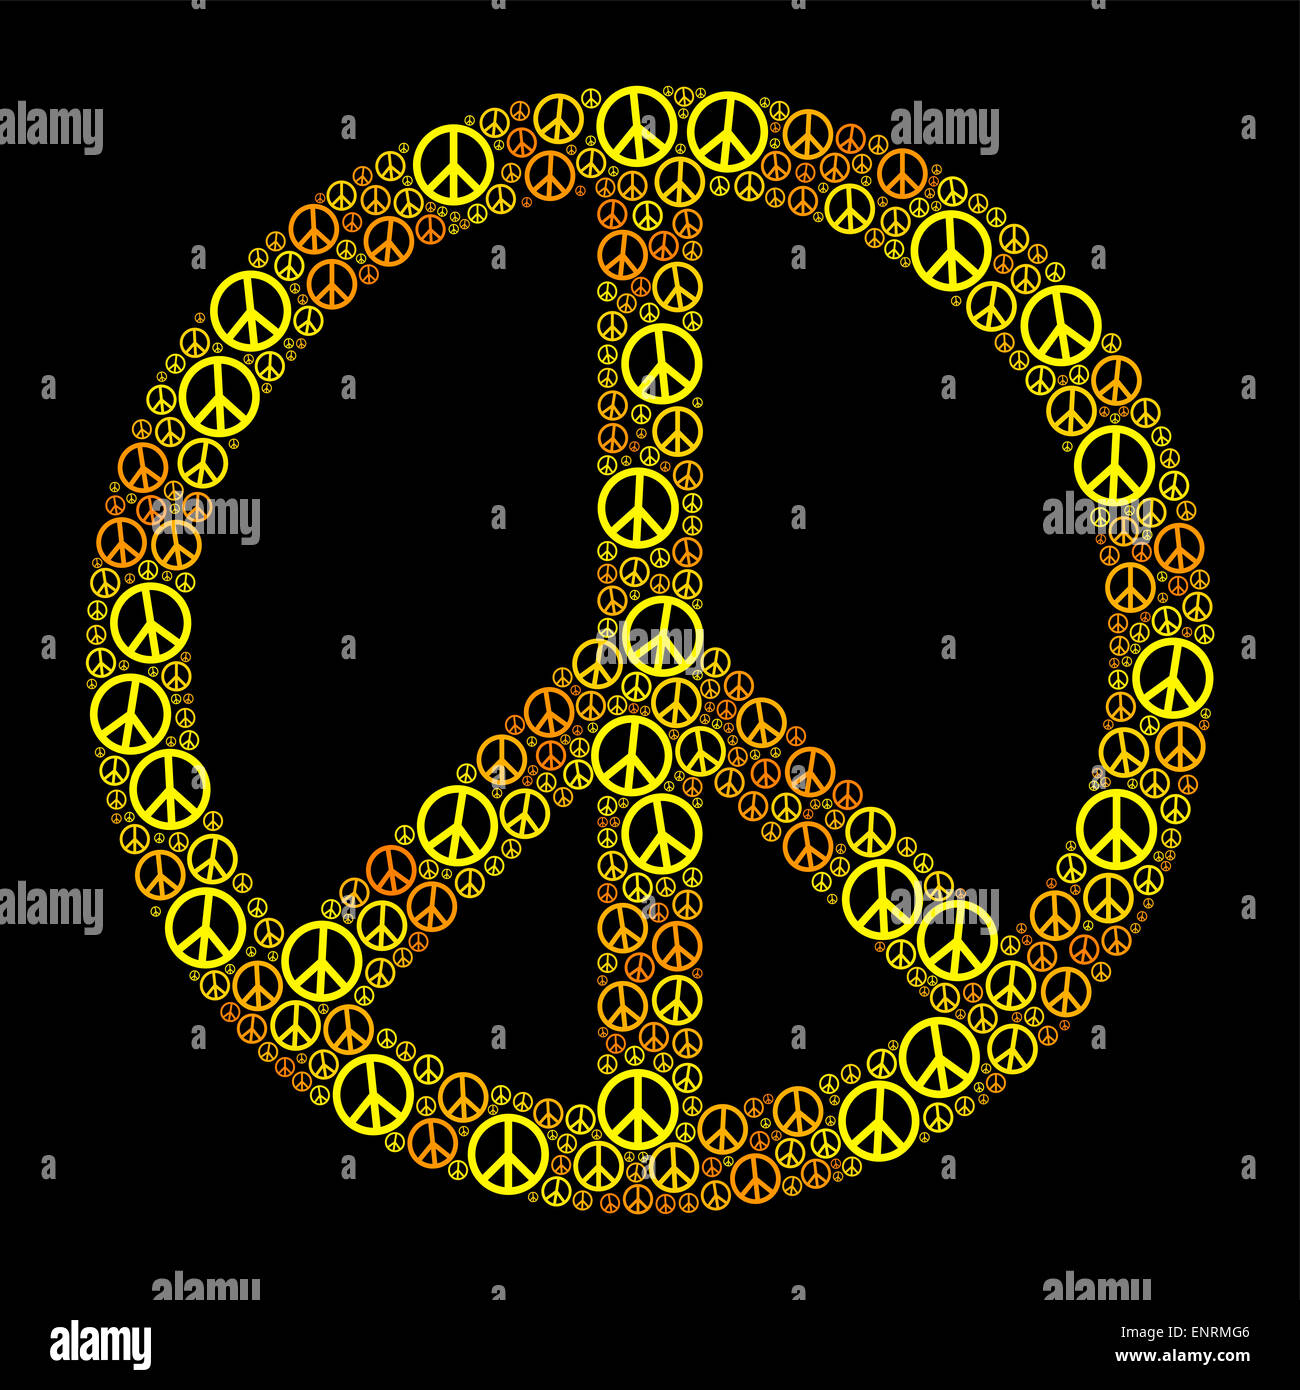 Farbige Peace-Zeichen durch viele kleine Frieden Symbole gebildet. Gelb orange Darstellung auf schwarzem Hintergrund. Stockfoto